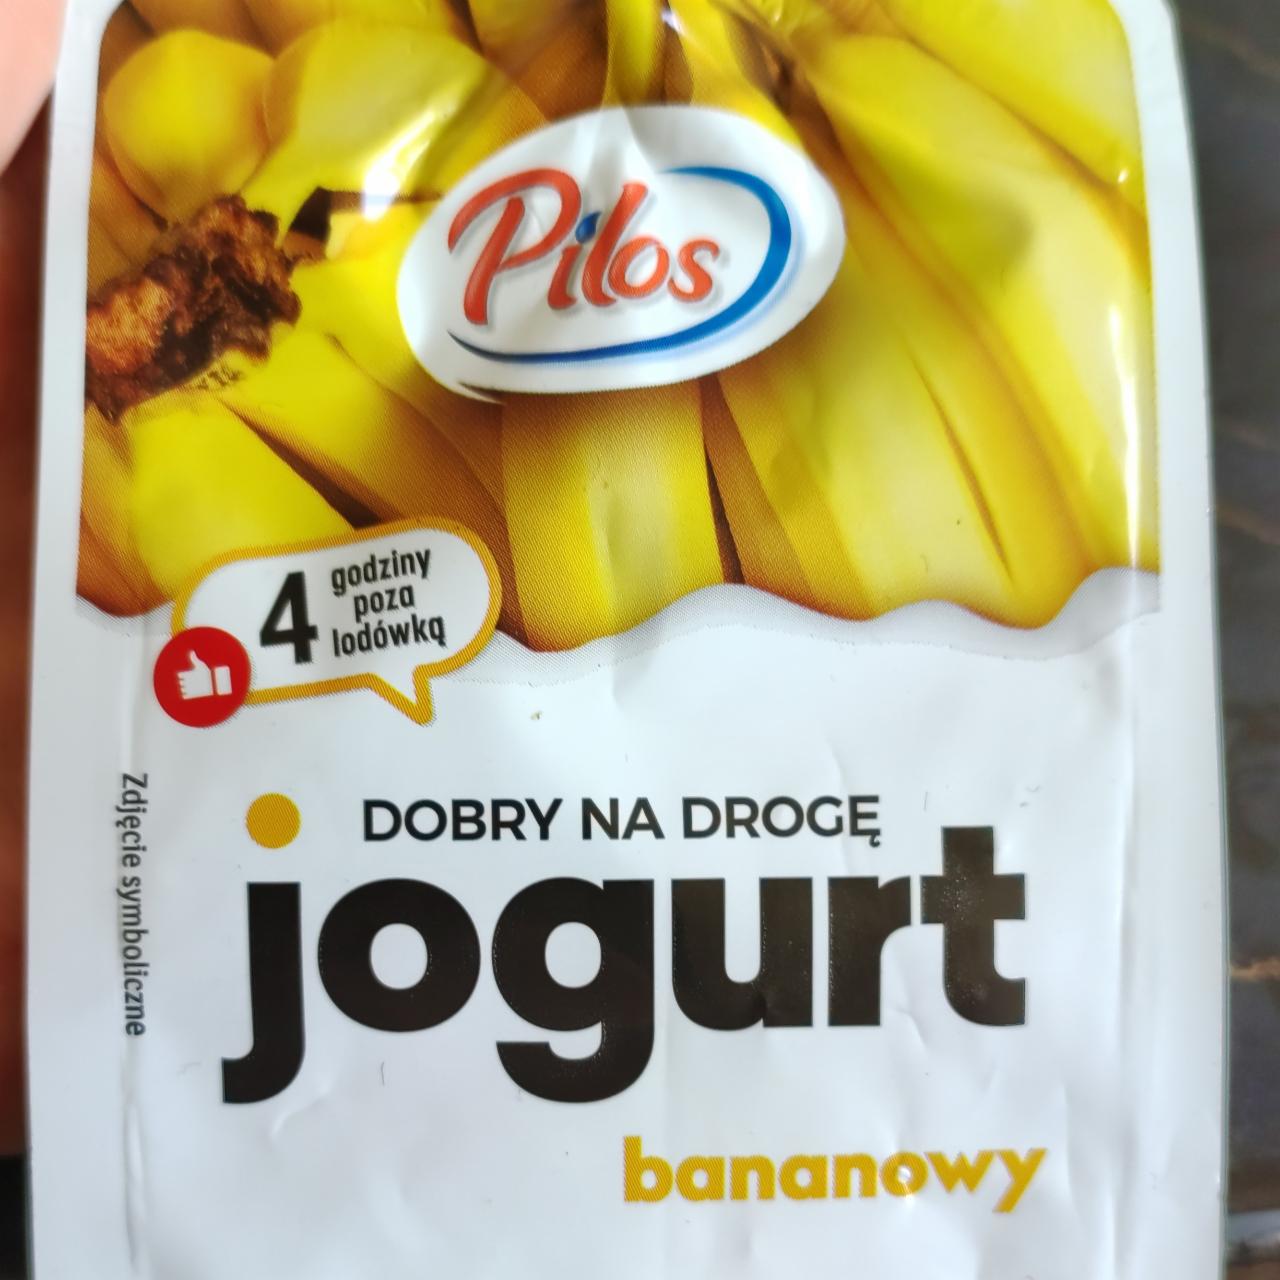 Zdjęcia - Pilos jogurt o smaku bananowym